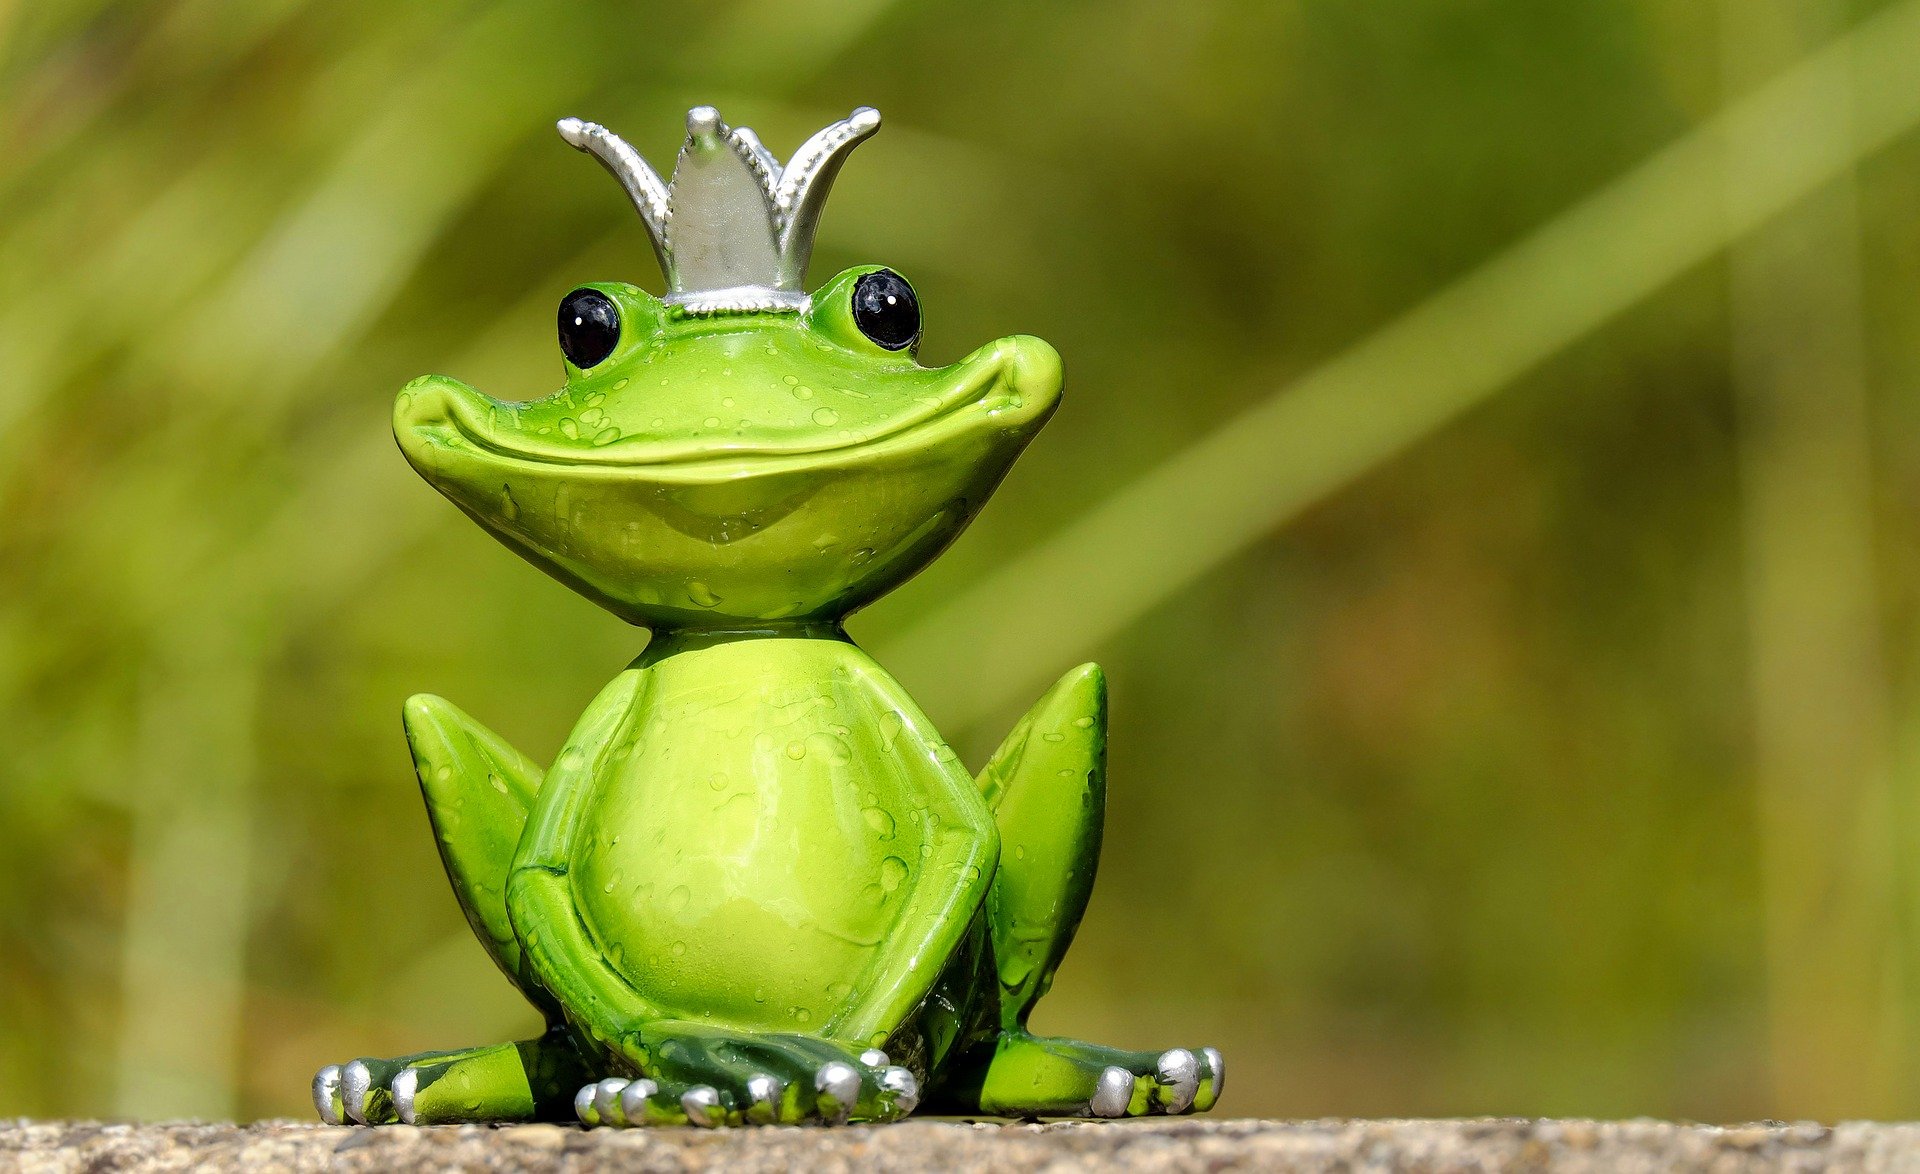 Froschfigur - frog figure